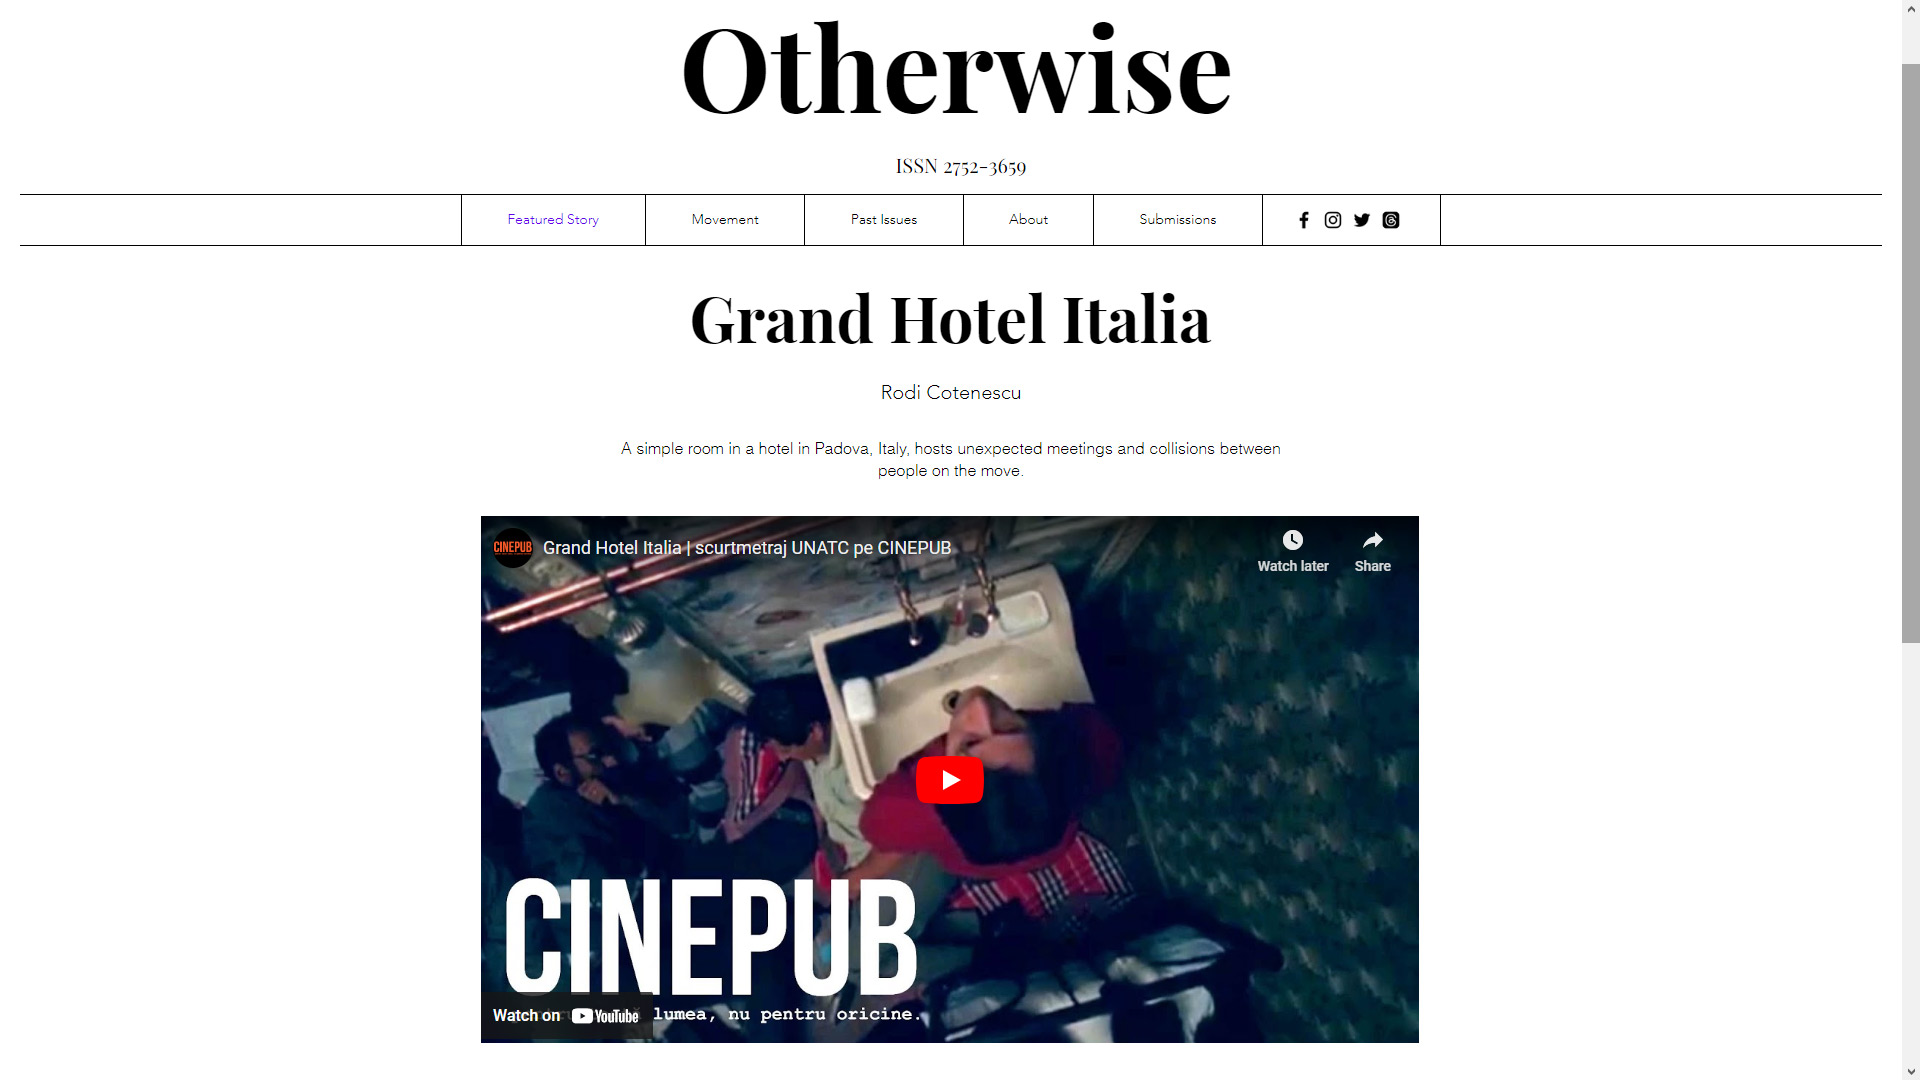 Otherwise Magazine - Grand Hotel Italia